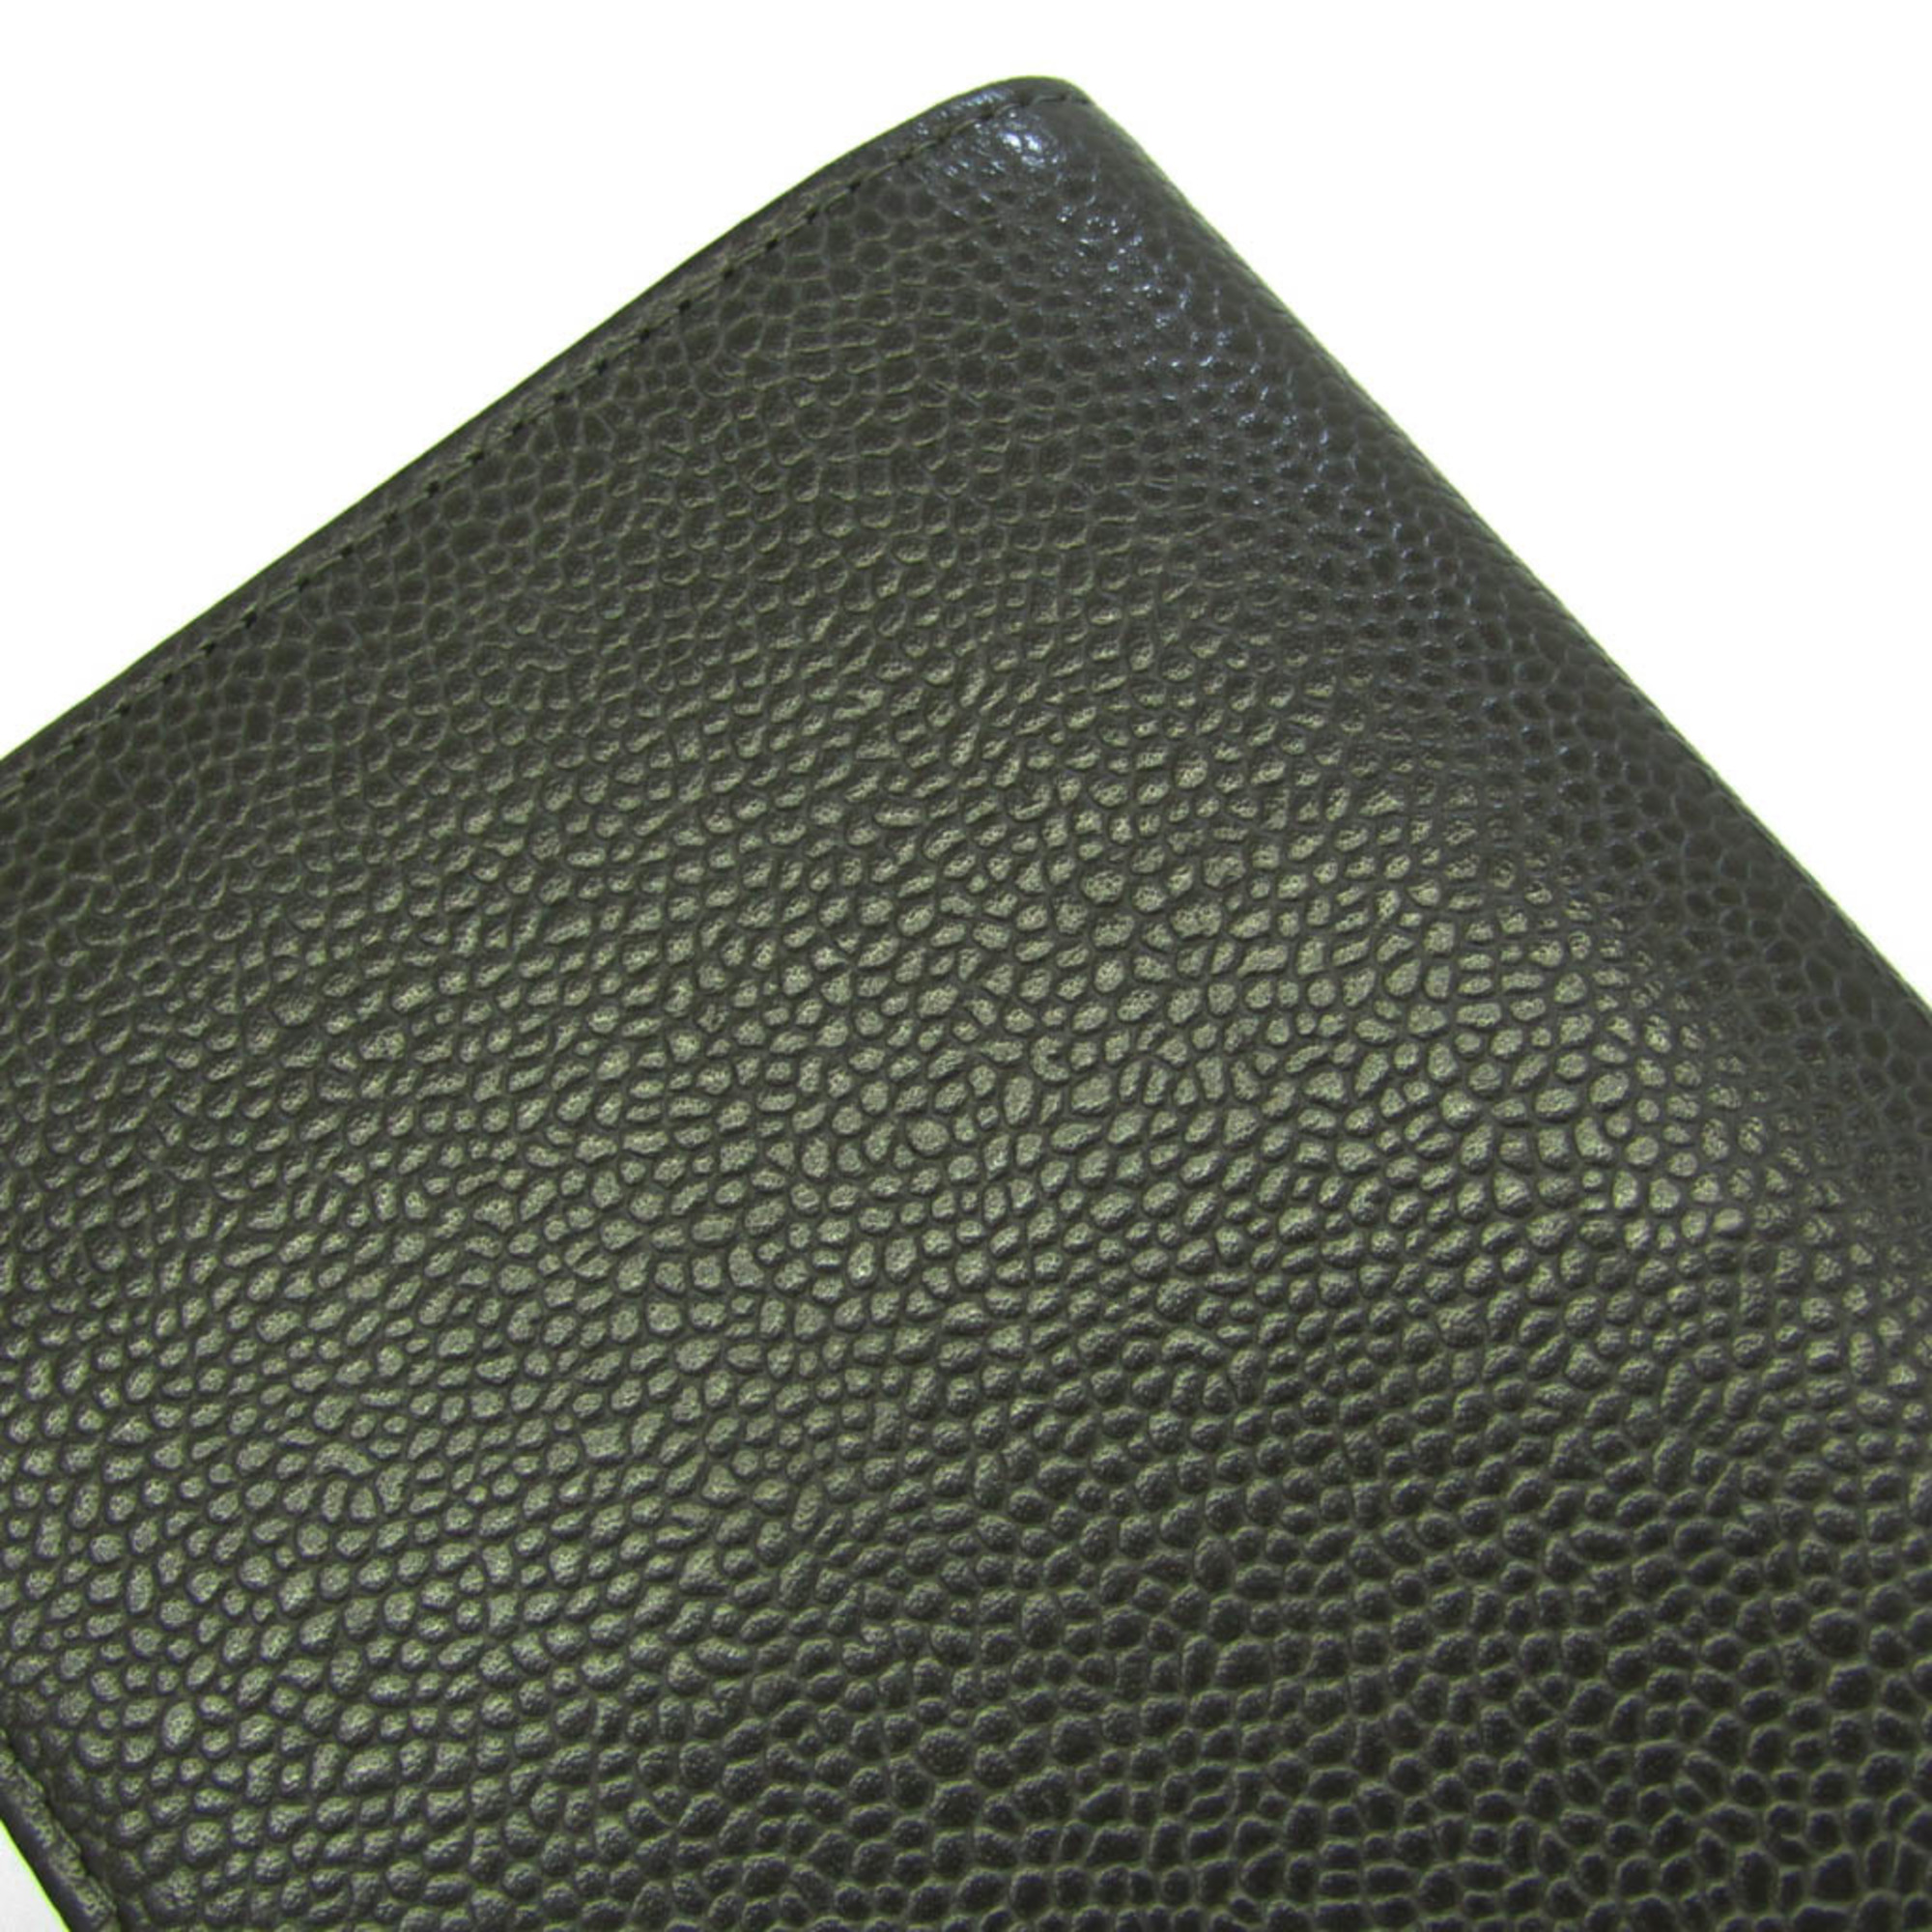 シャネル(Chanel) ココマーク A48651 レディース キャビアスキン 長財布（二つ折り） グレー